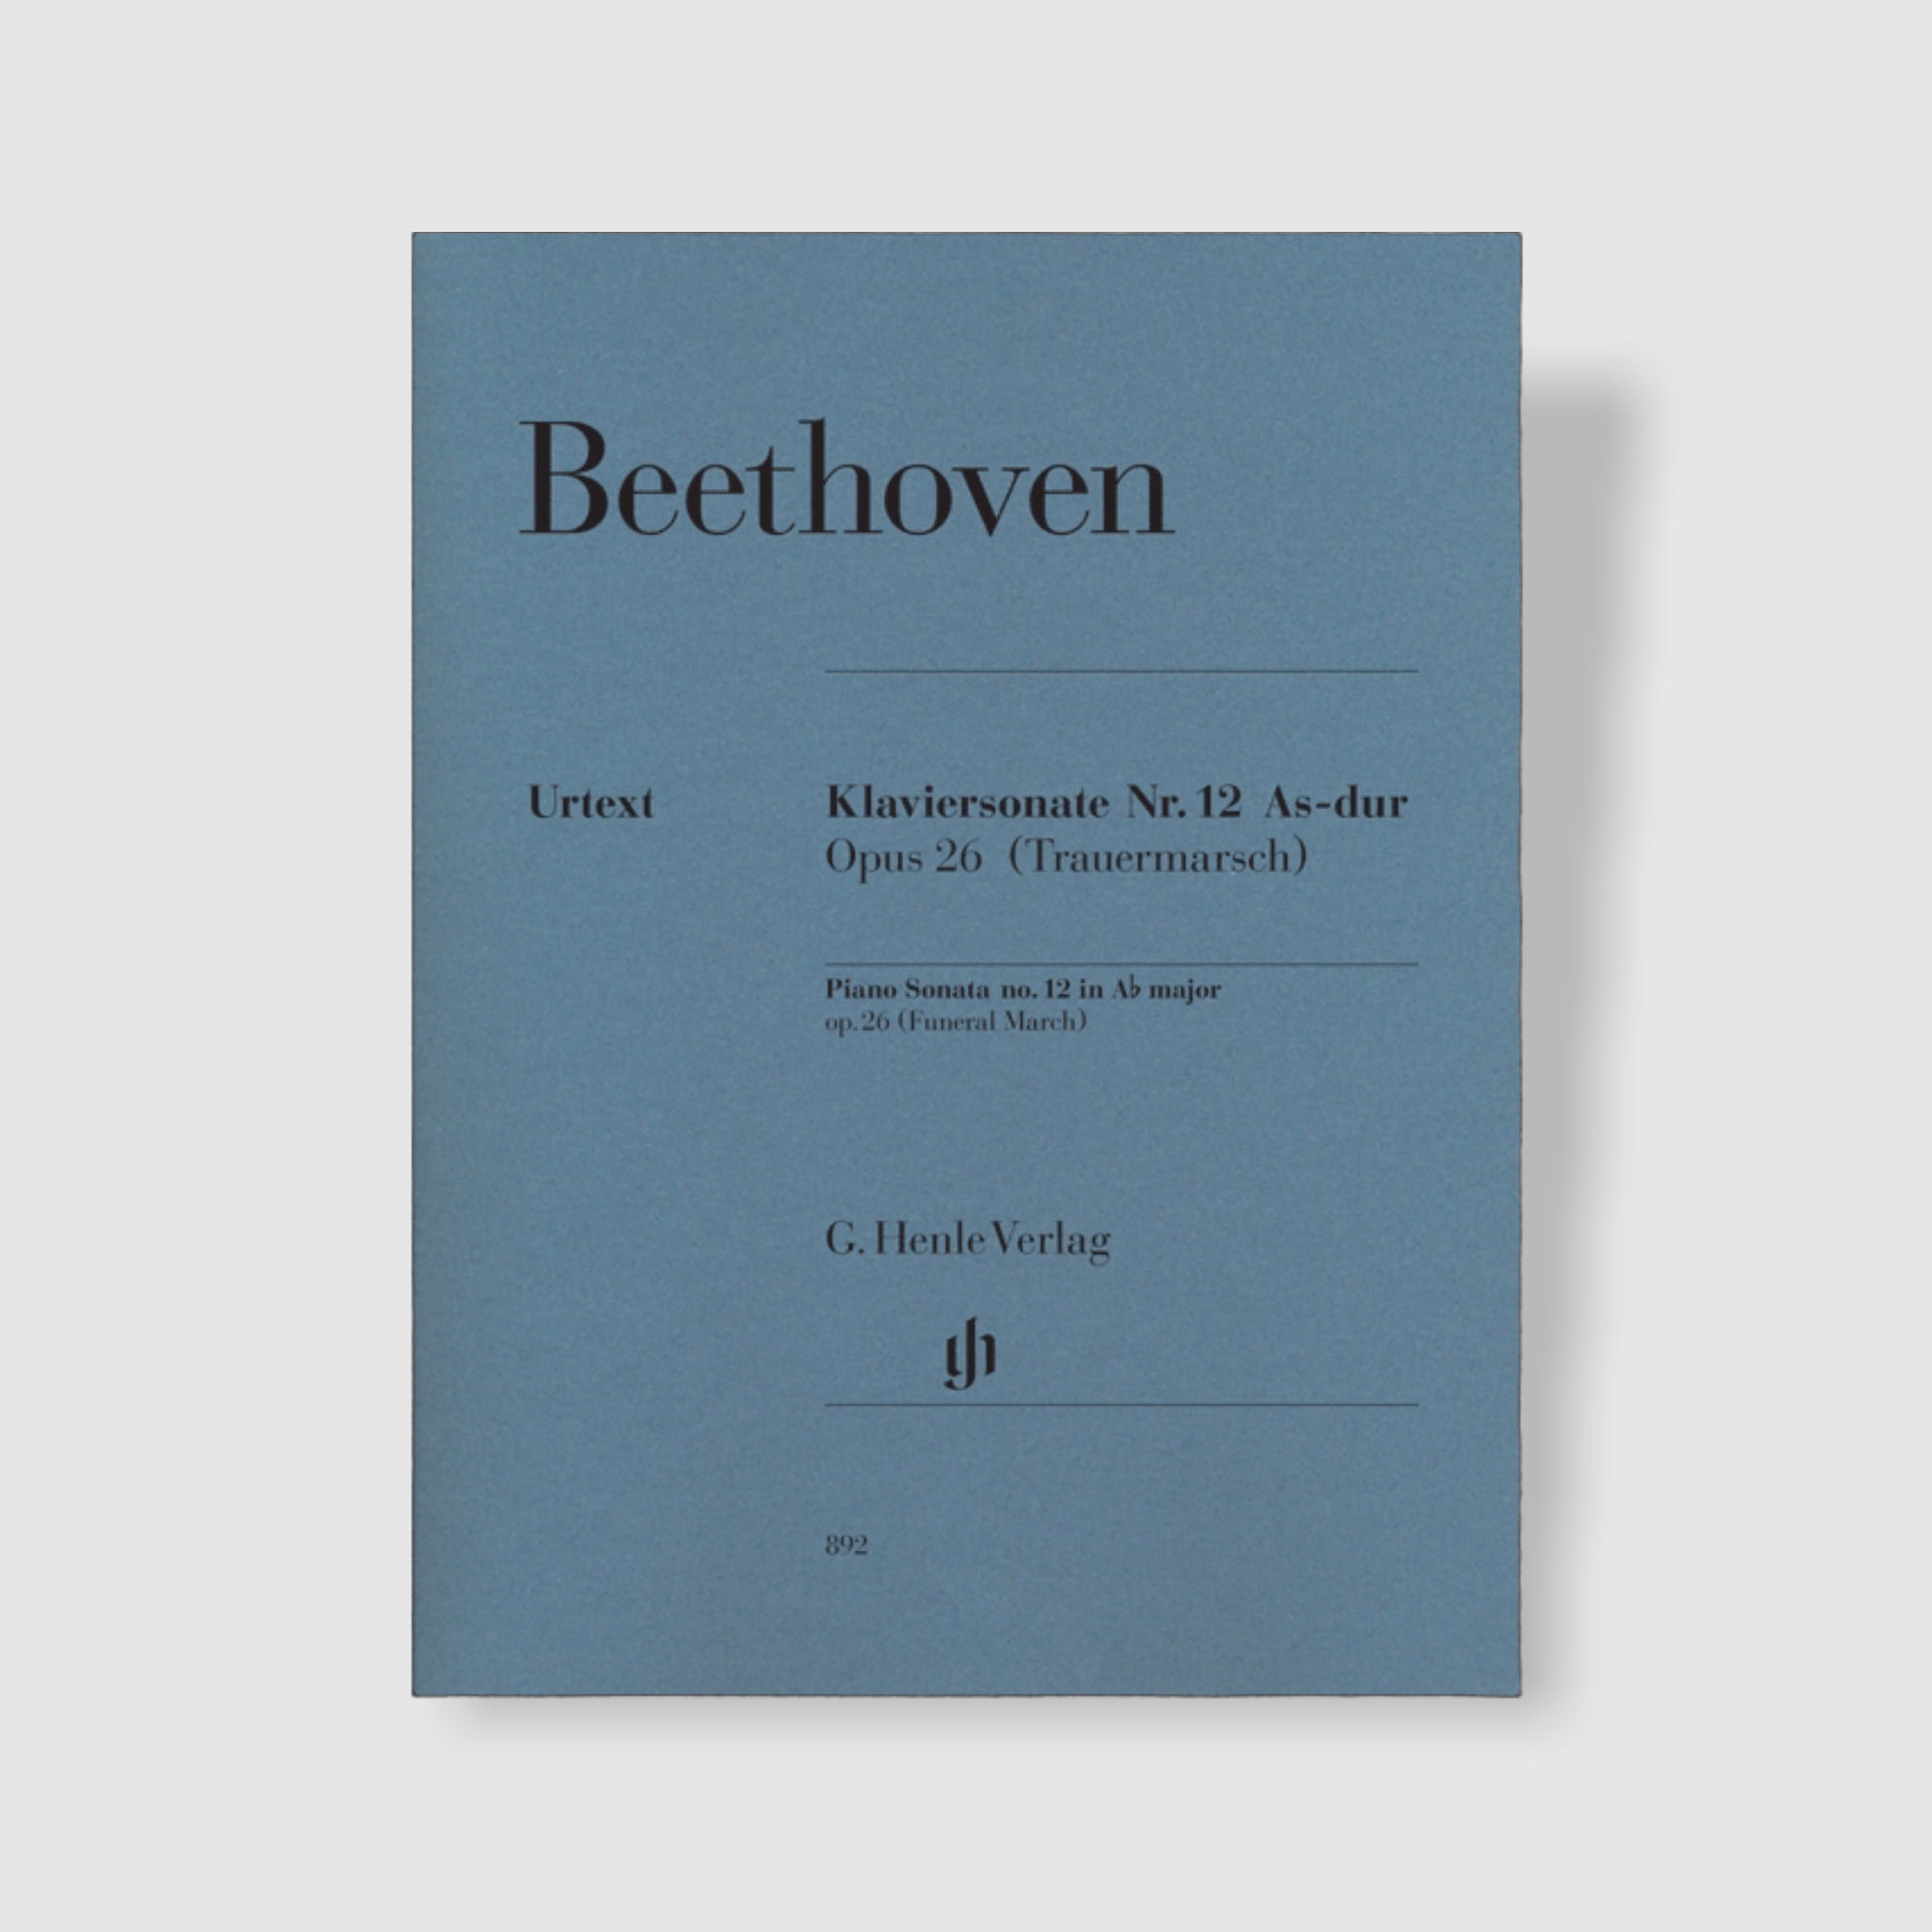 베토벤 피아노 소나타 No. 12 in A flat Major, Op. 26